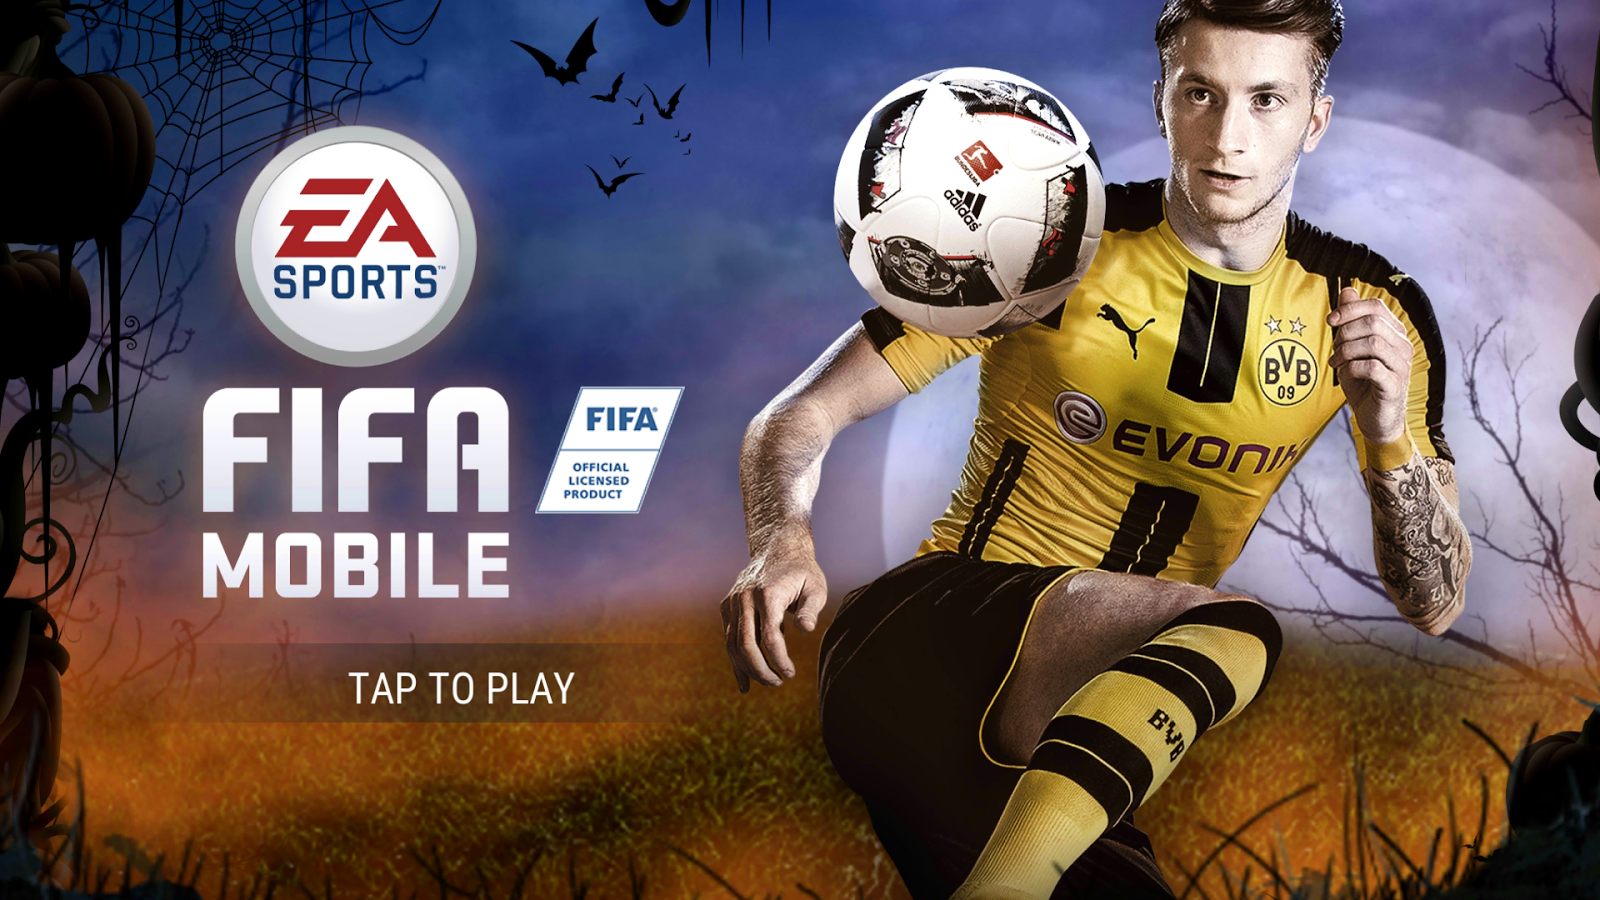 تحميل لعبة فيفا 2017 للاندرويد كاملة مجانا (اخر اصدار) DOWNLOAD FIFA 17